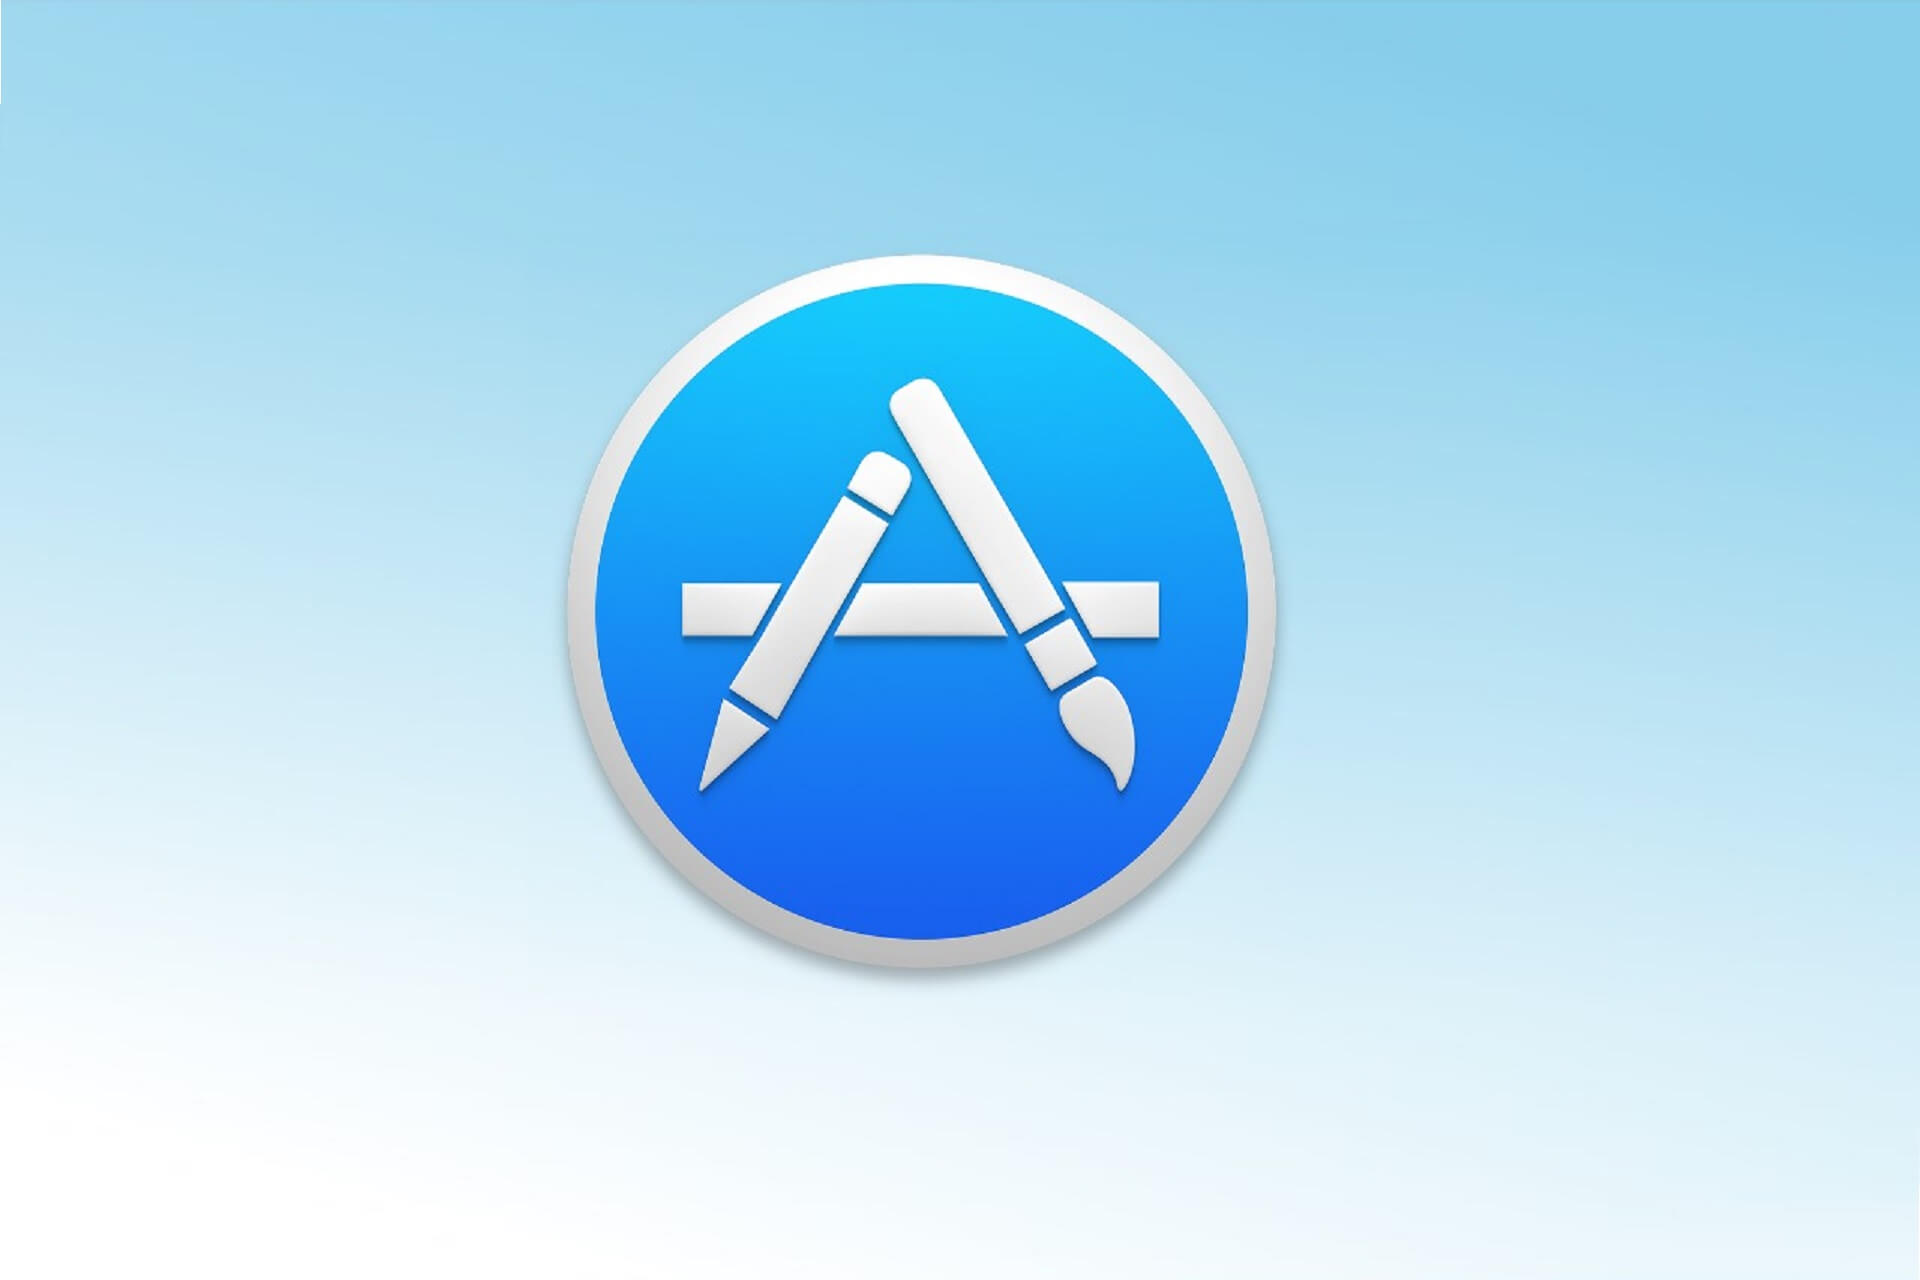 App Store isn't updating apps macbook